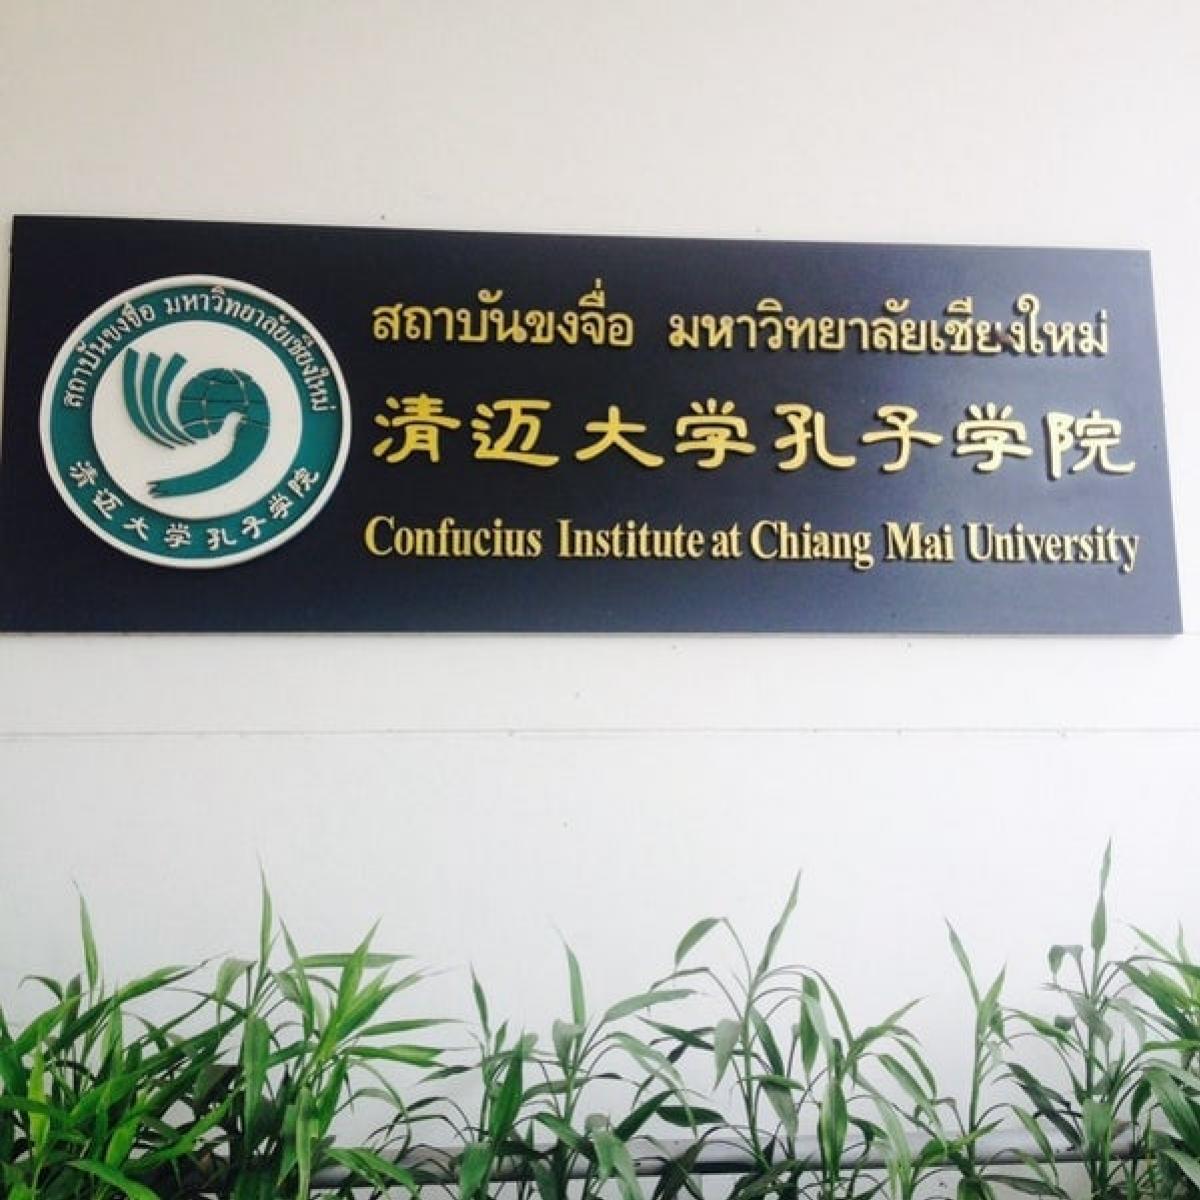 ประชุมออนไลน์ร่วมกับผู้อำนวยการสถาบันขงจื่อฝ่ายจีน วาระพิเศษเกี่ยวกับการจัดตั้งสมาคมศิษย์เก่ามหาวิทยาลัยยูนนานนอร์มอลในไทย